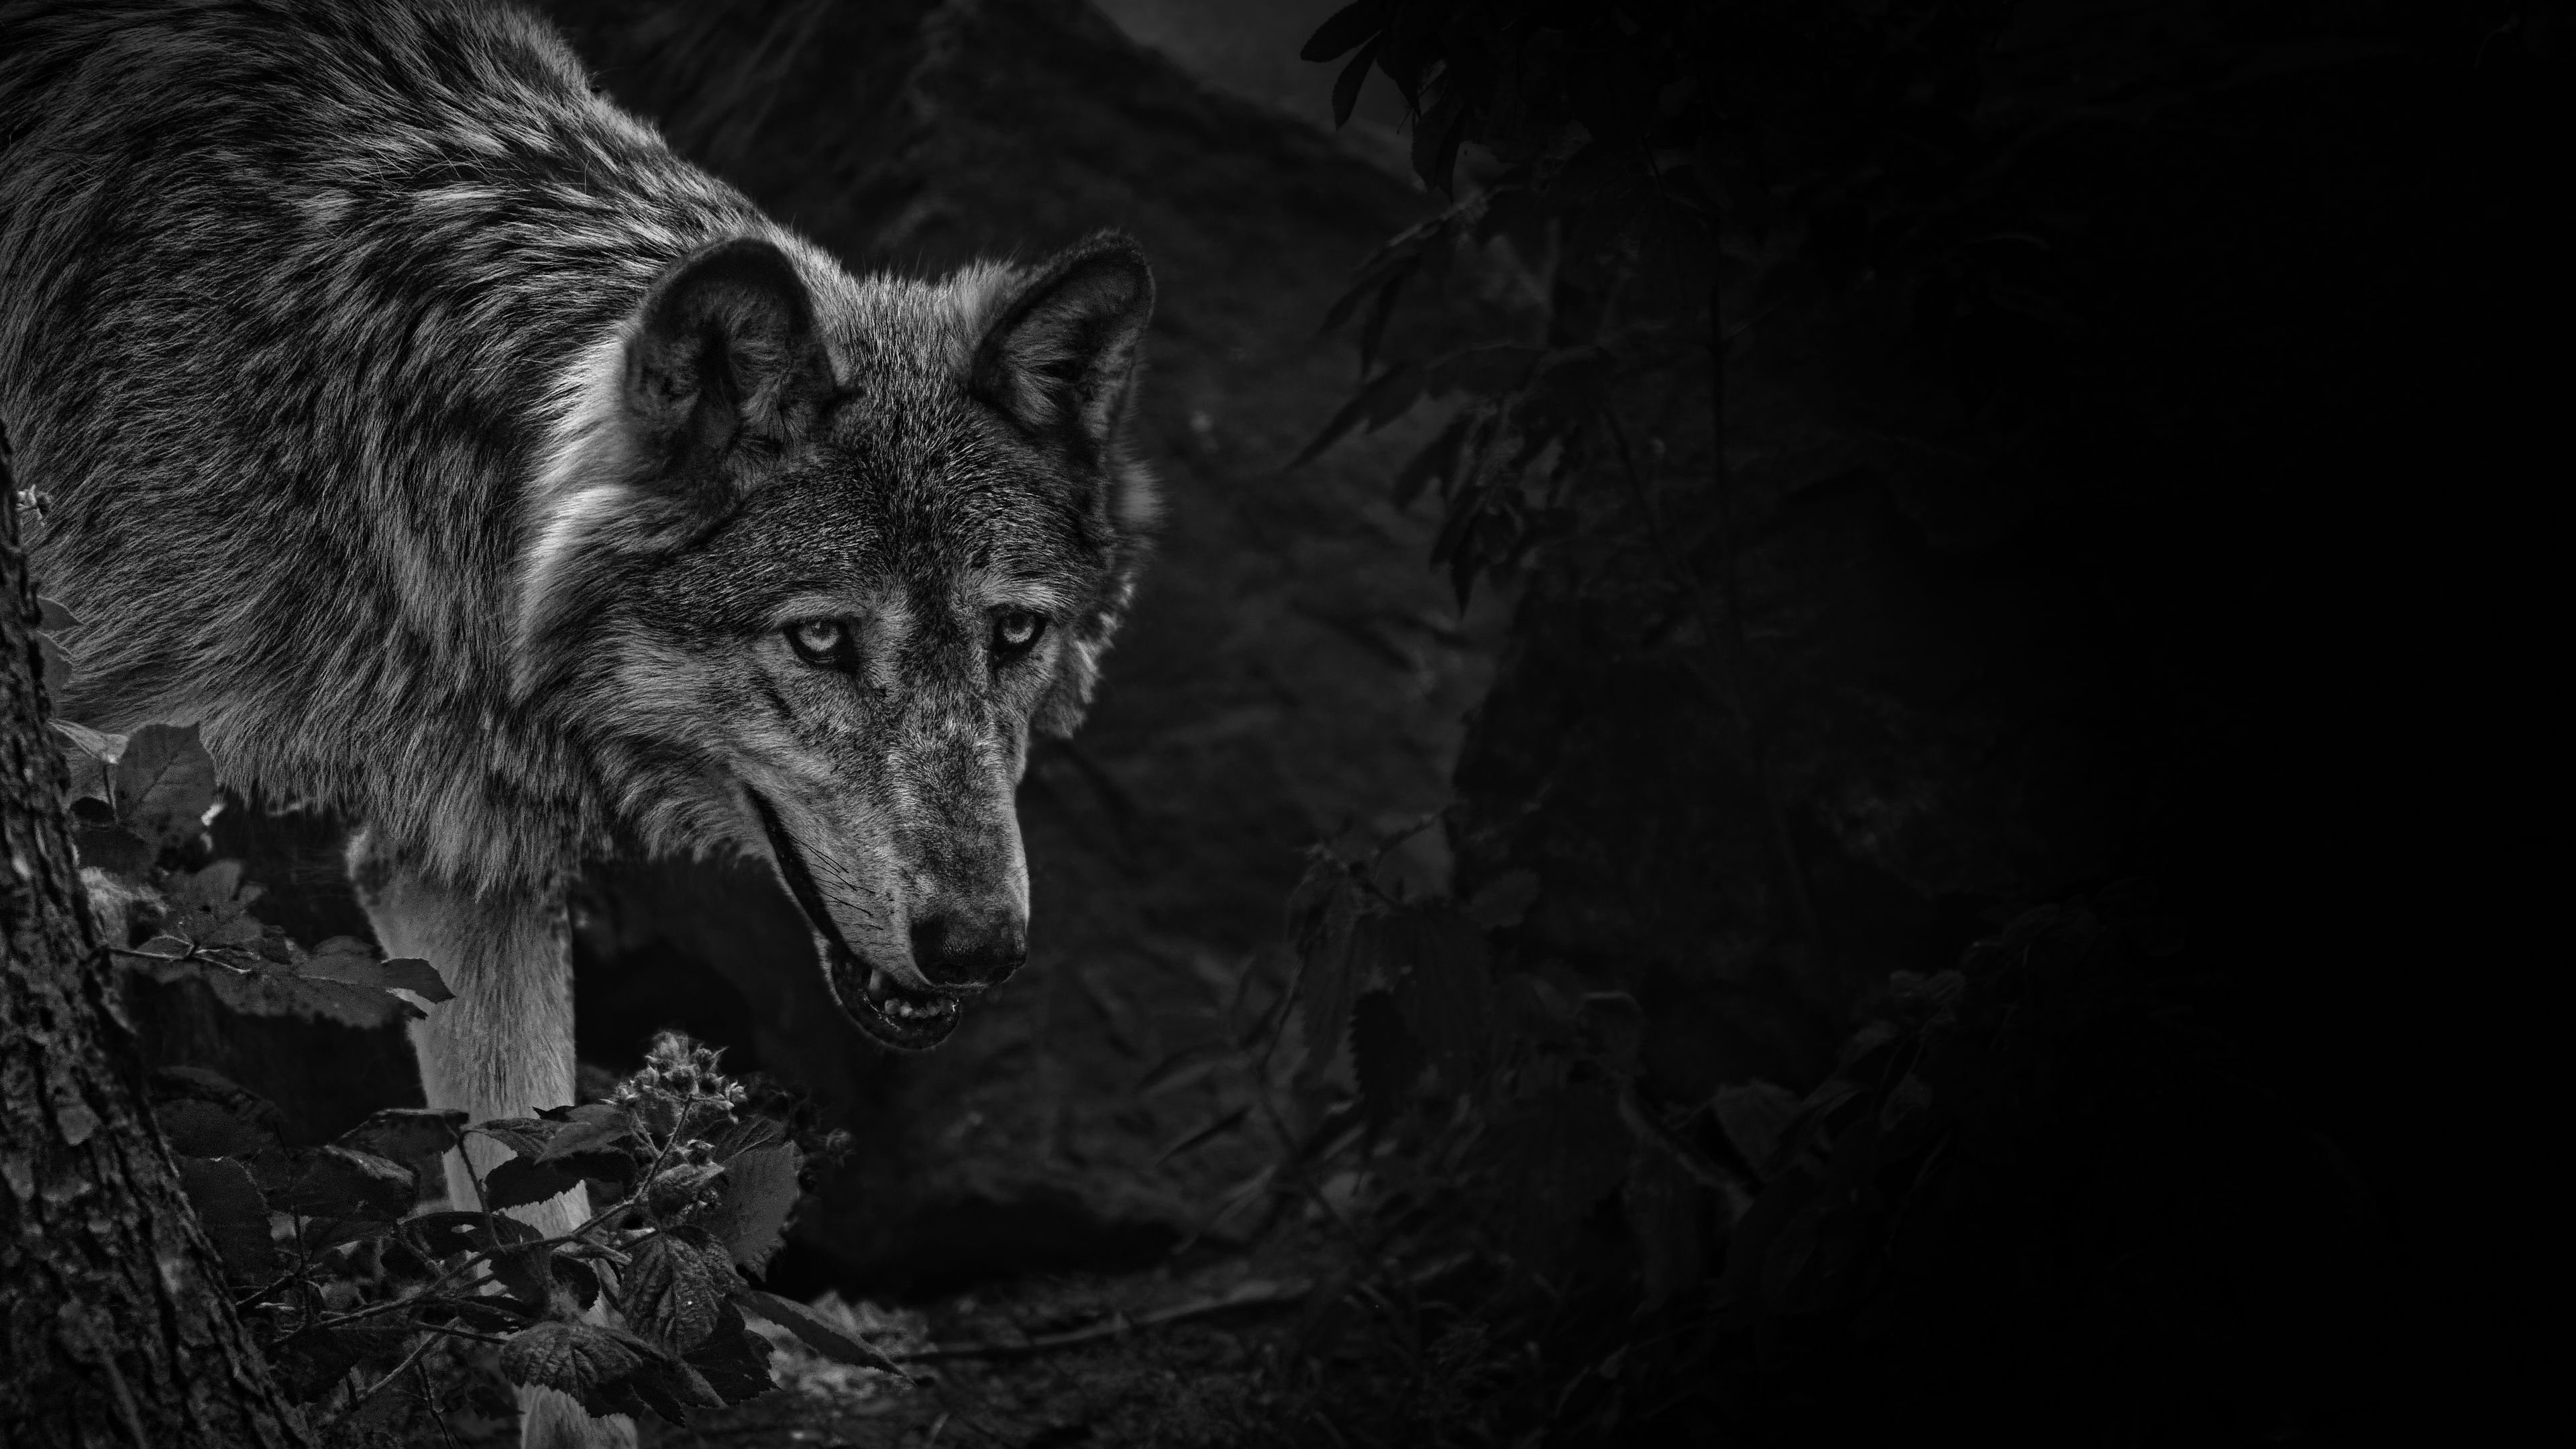 Bạn là một người yêu thích loài sói và đang tìm kiếm một bức ảnh nền về chúng? Hãy xem qua bộ sưu tập hình nền sói đẹp, ấn tượng của chúng tôi. Với sự kết hợp của mẫu hoa văn và chất liệu tuyệt đẹp, chúng sẽ giúp cho máy tính của bạn trở nên hoang dã và tinh nghịch.